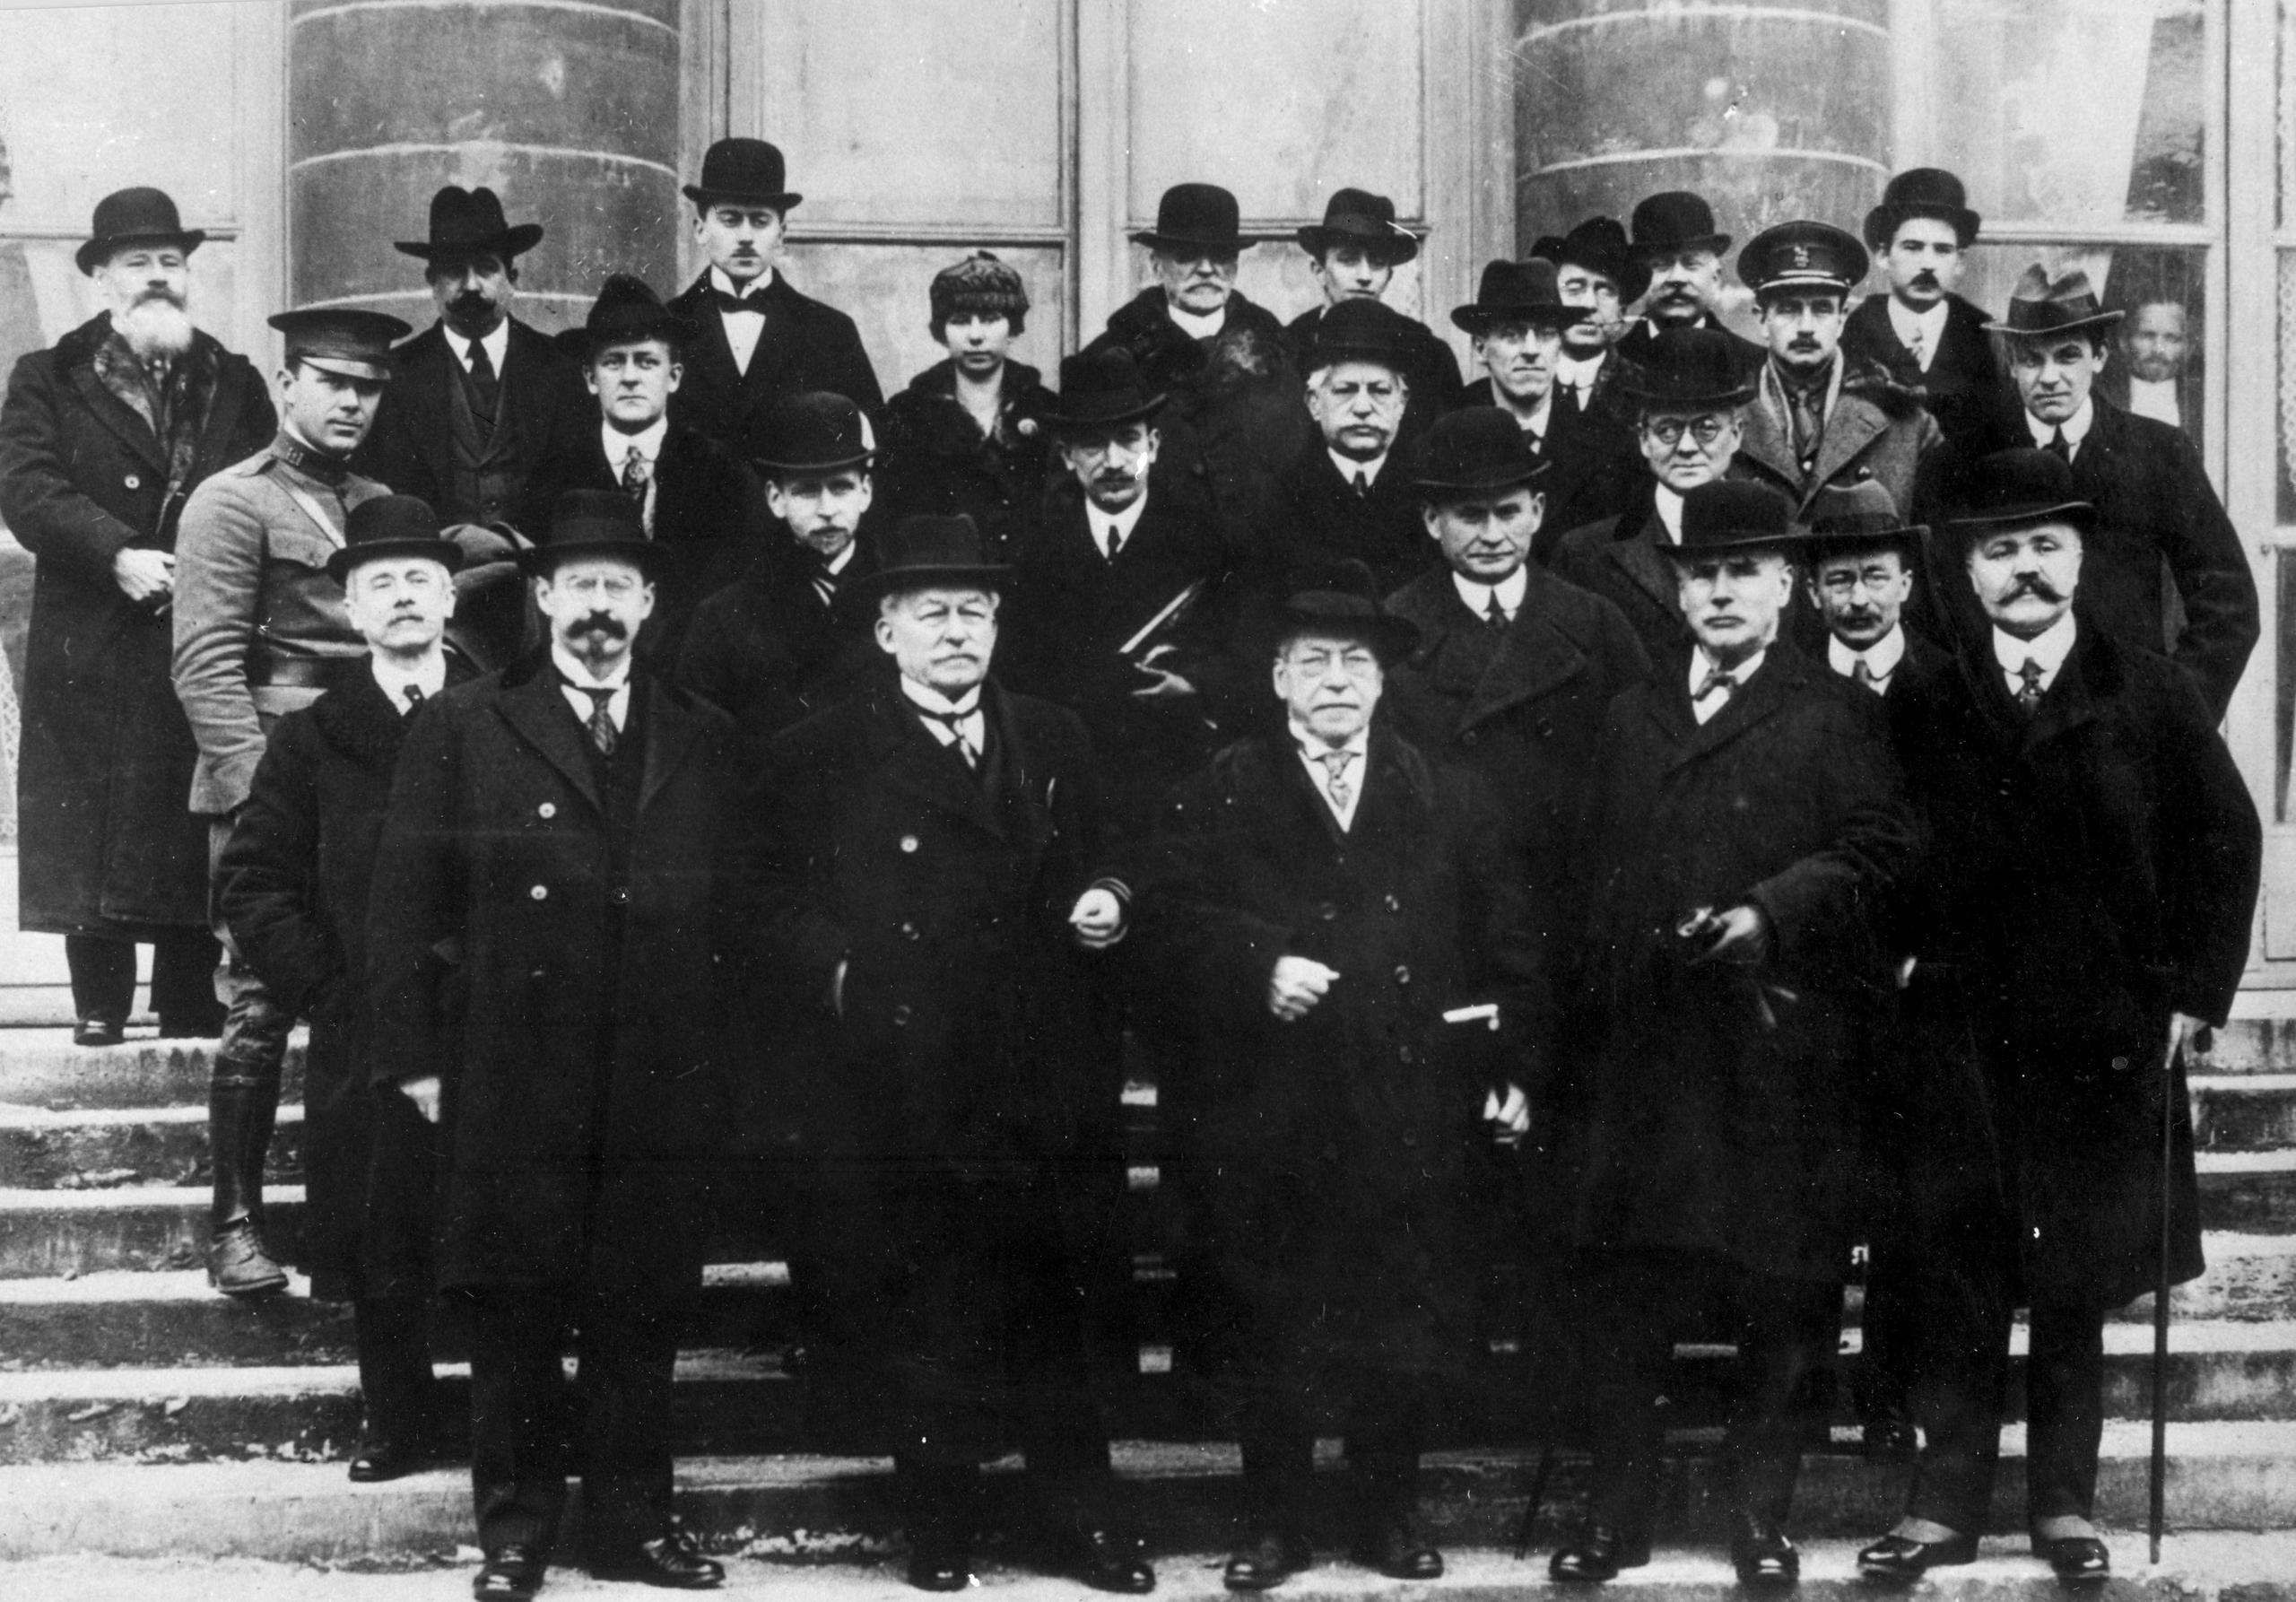 国際労働機関（ILO）の創設が決定された1919年のパリ講和会議に出席したILO委員たち